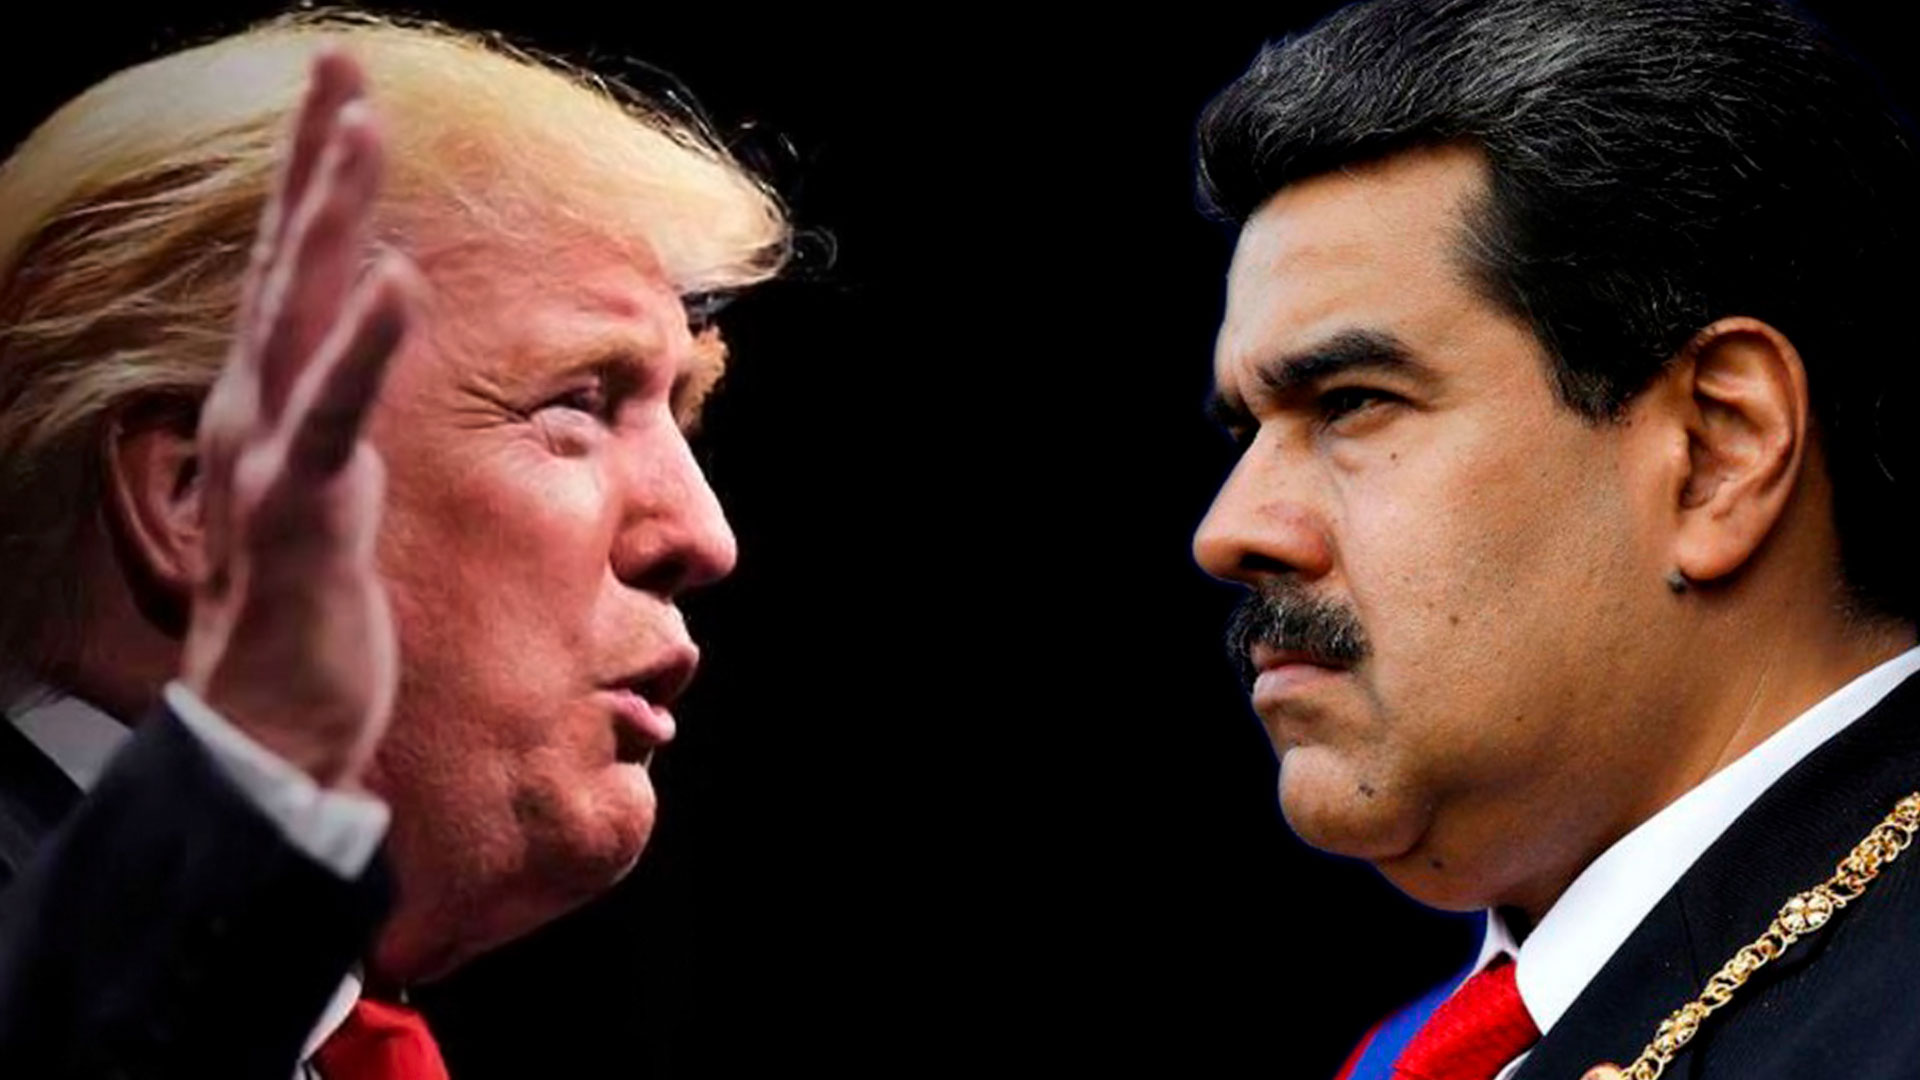 ¿Para salir del poder? Maduro estaría dispuesto a reunirse con Trump